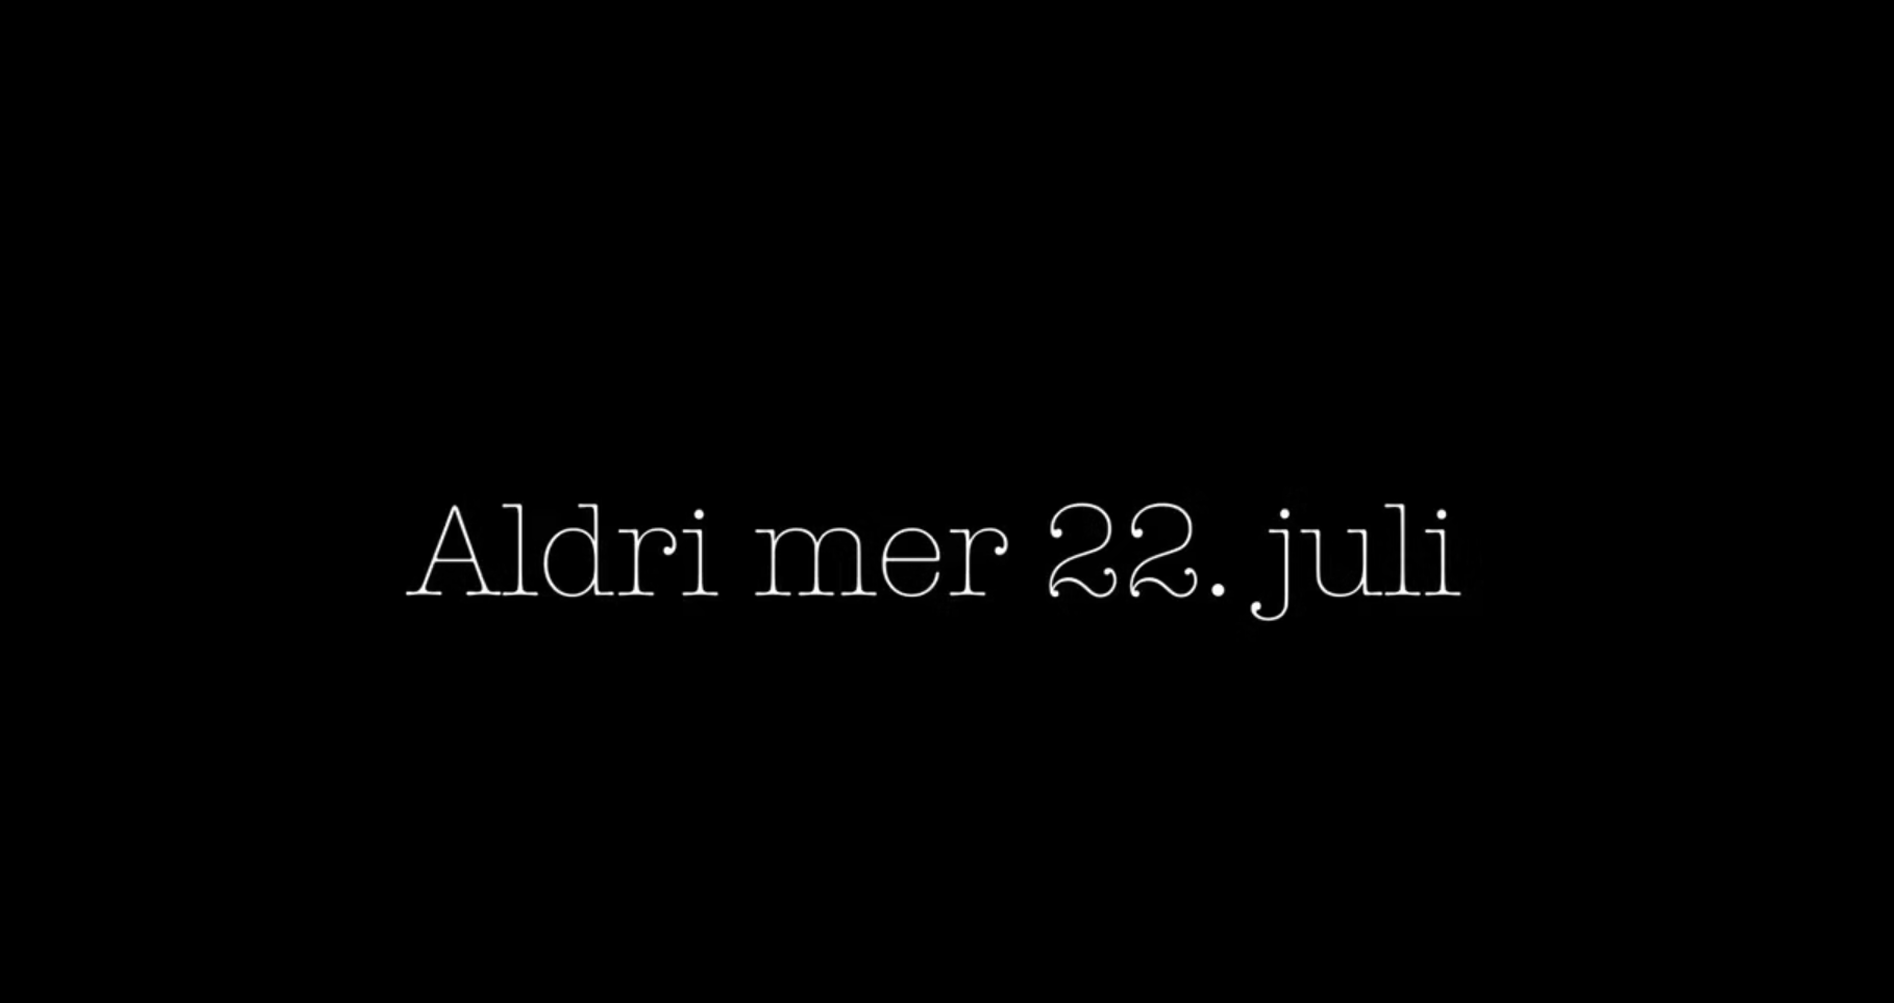 Plakat med sort bakgrunn og tekst "Aldri mer 22. juli".